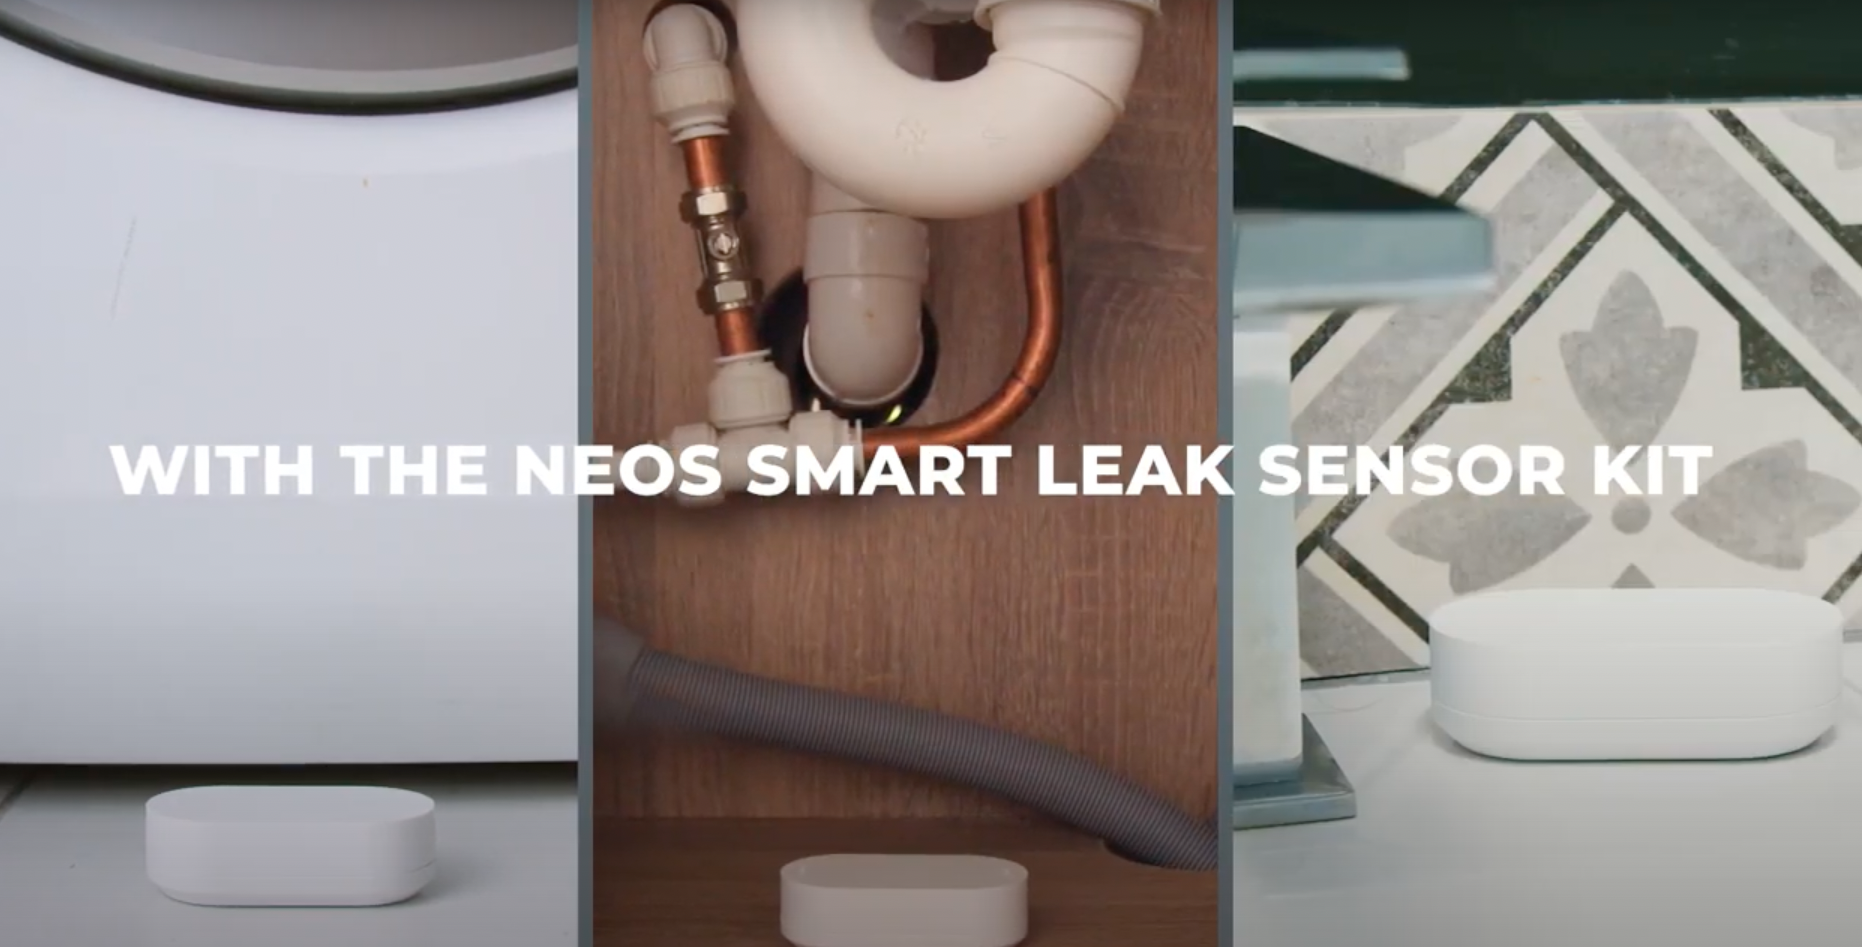 Neos Smart Leak Sensor video by KJC Creative